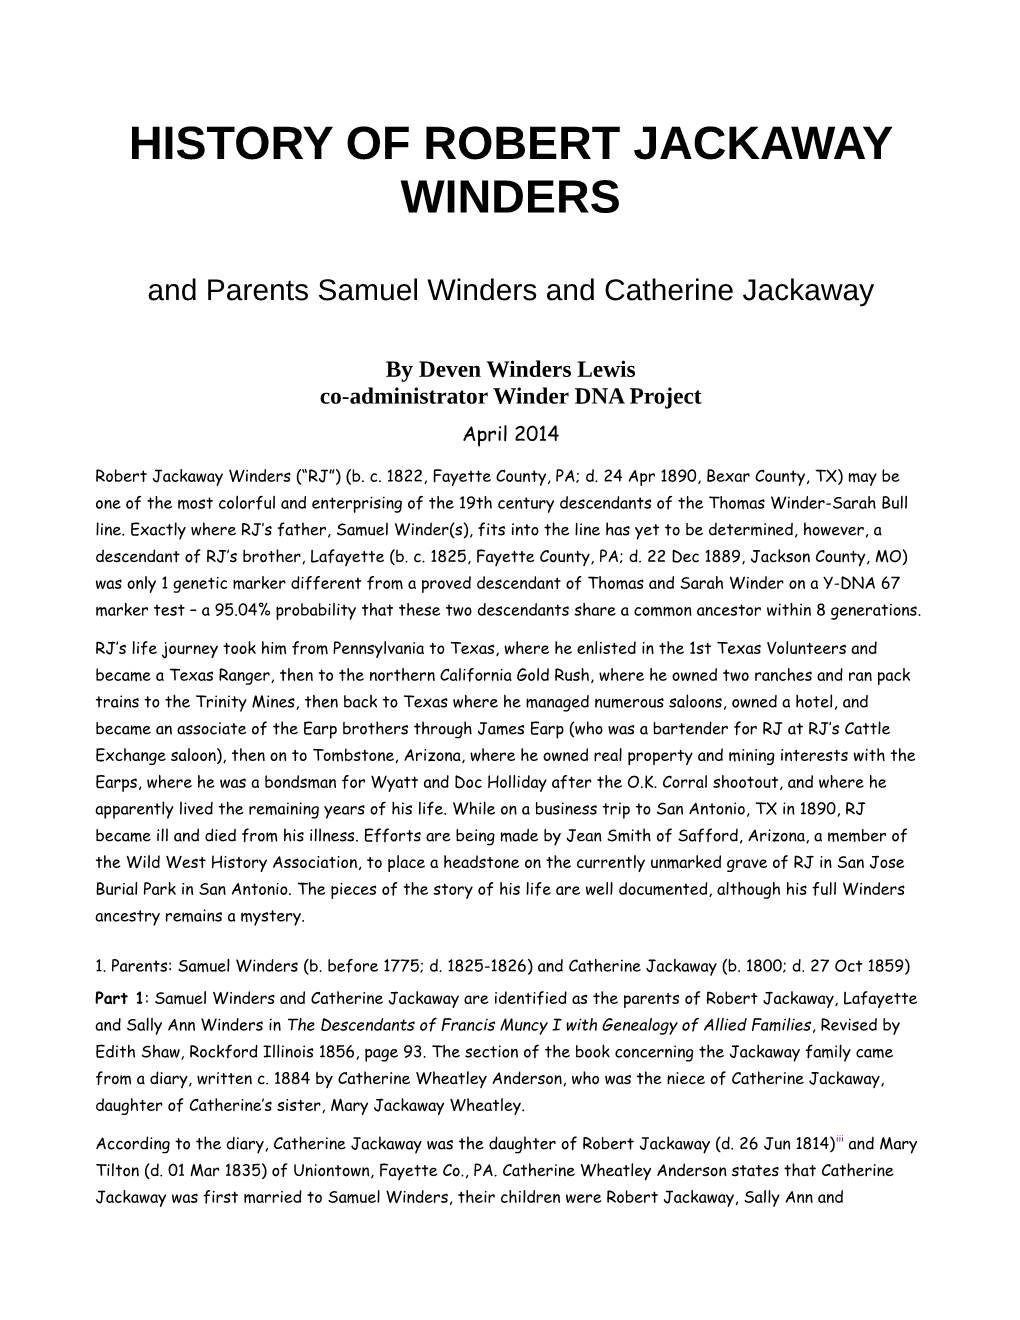 History of Robert Jackaway Winders